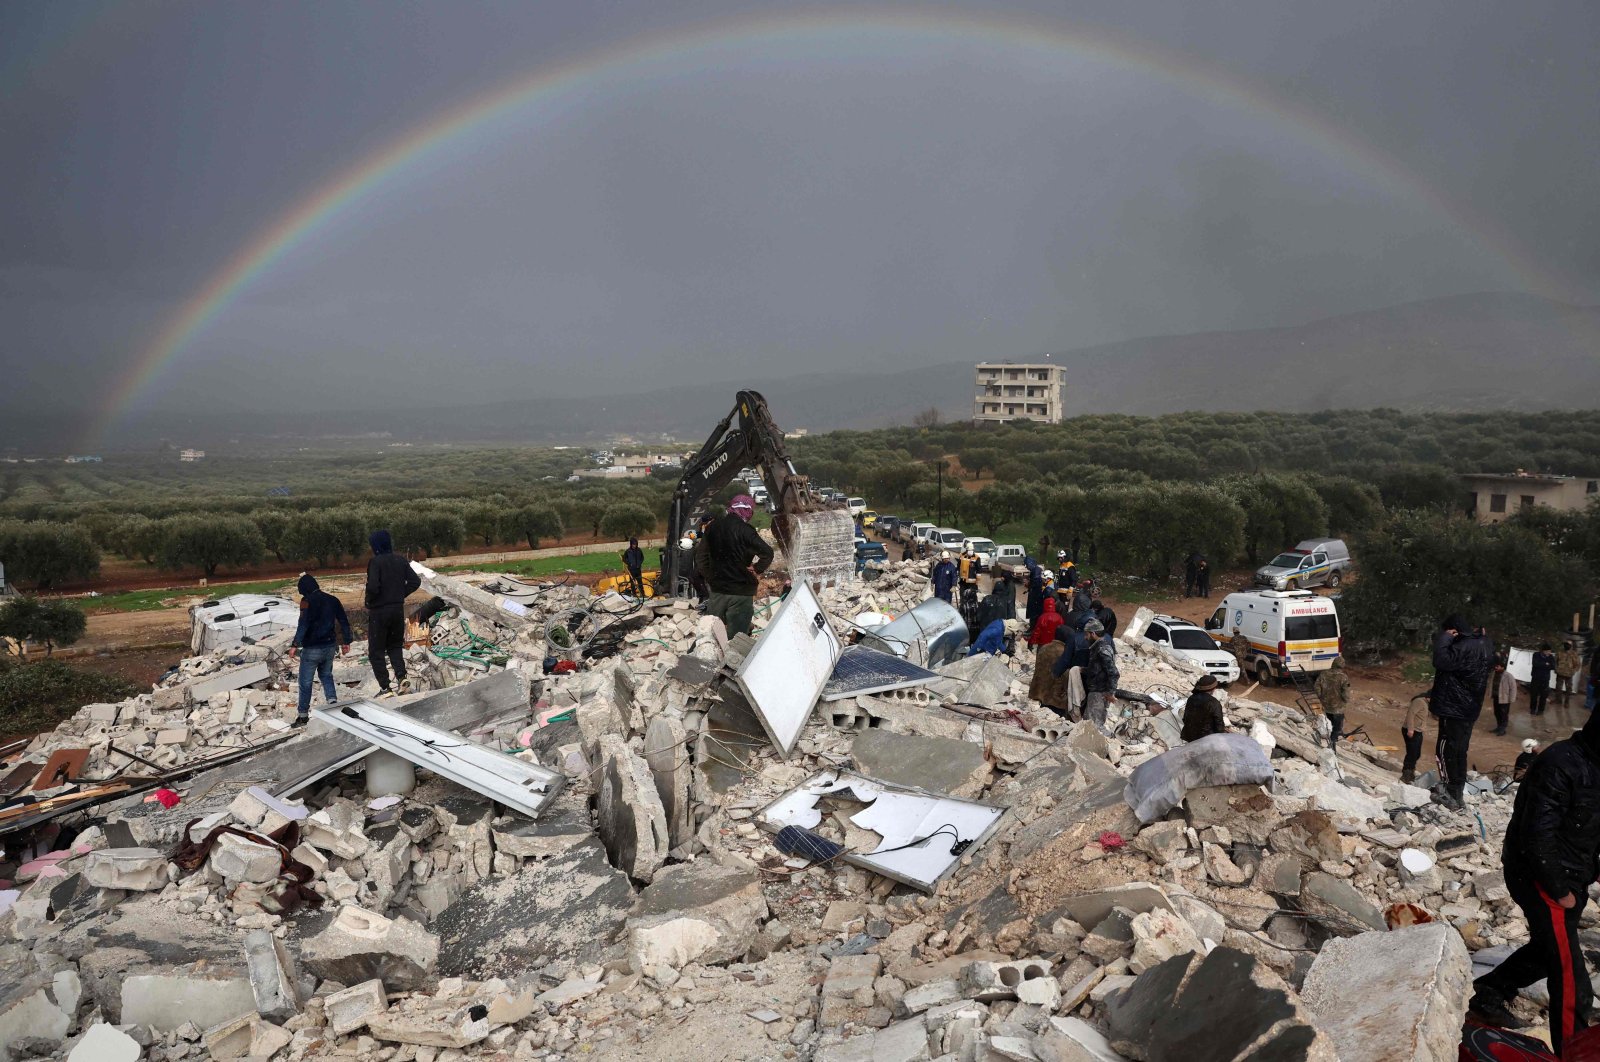 Seruan untuk bantuan karena korban tewas akibat gempa di Suriah melewati 1.600